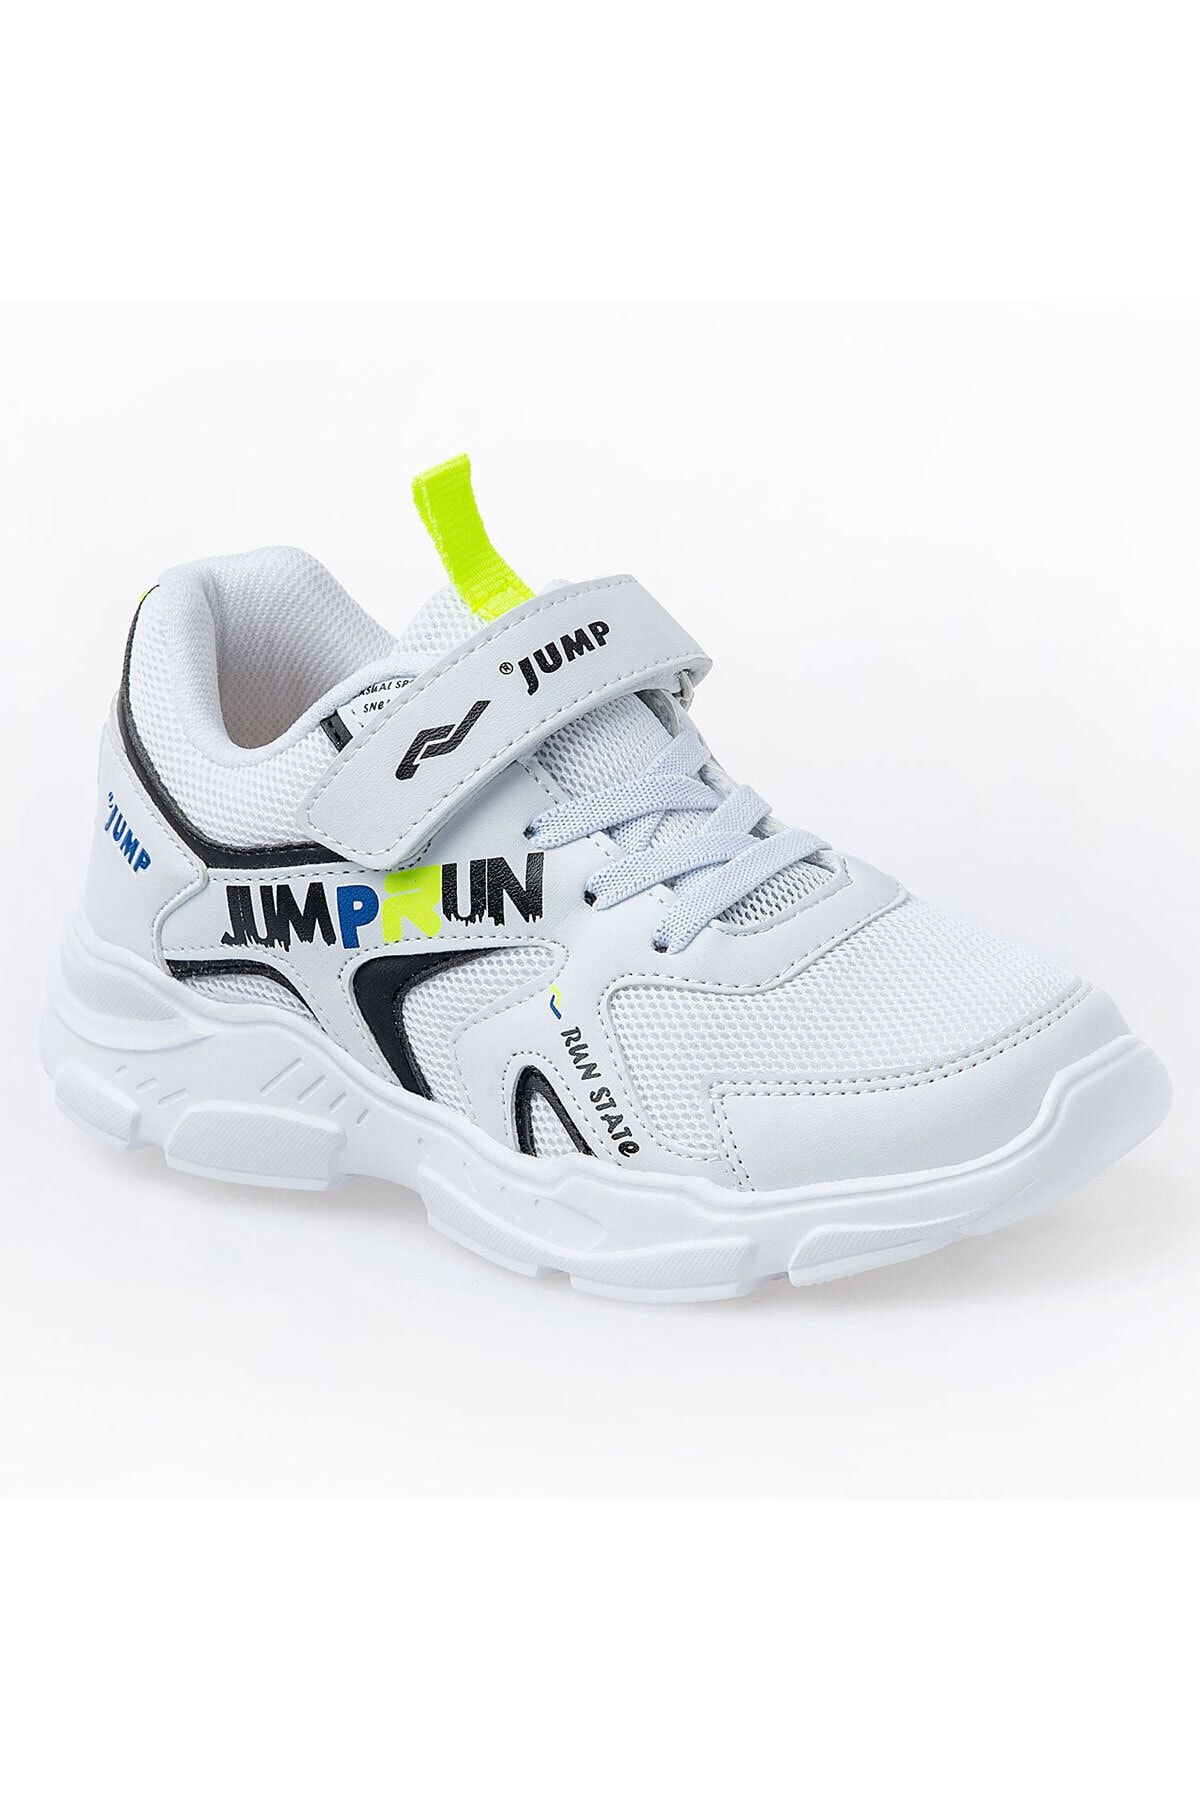 24747 Beyaz - Siyah Uniseks Çocuk Spor Ayakkabı